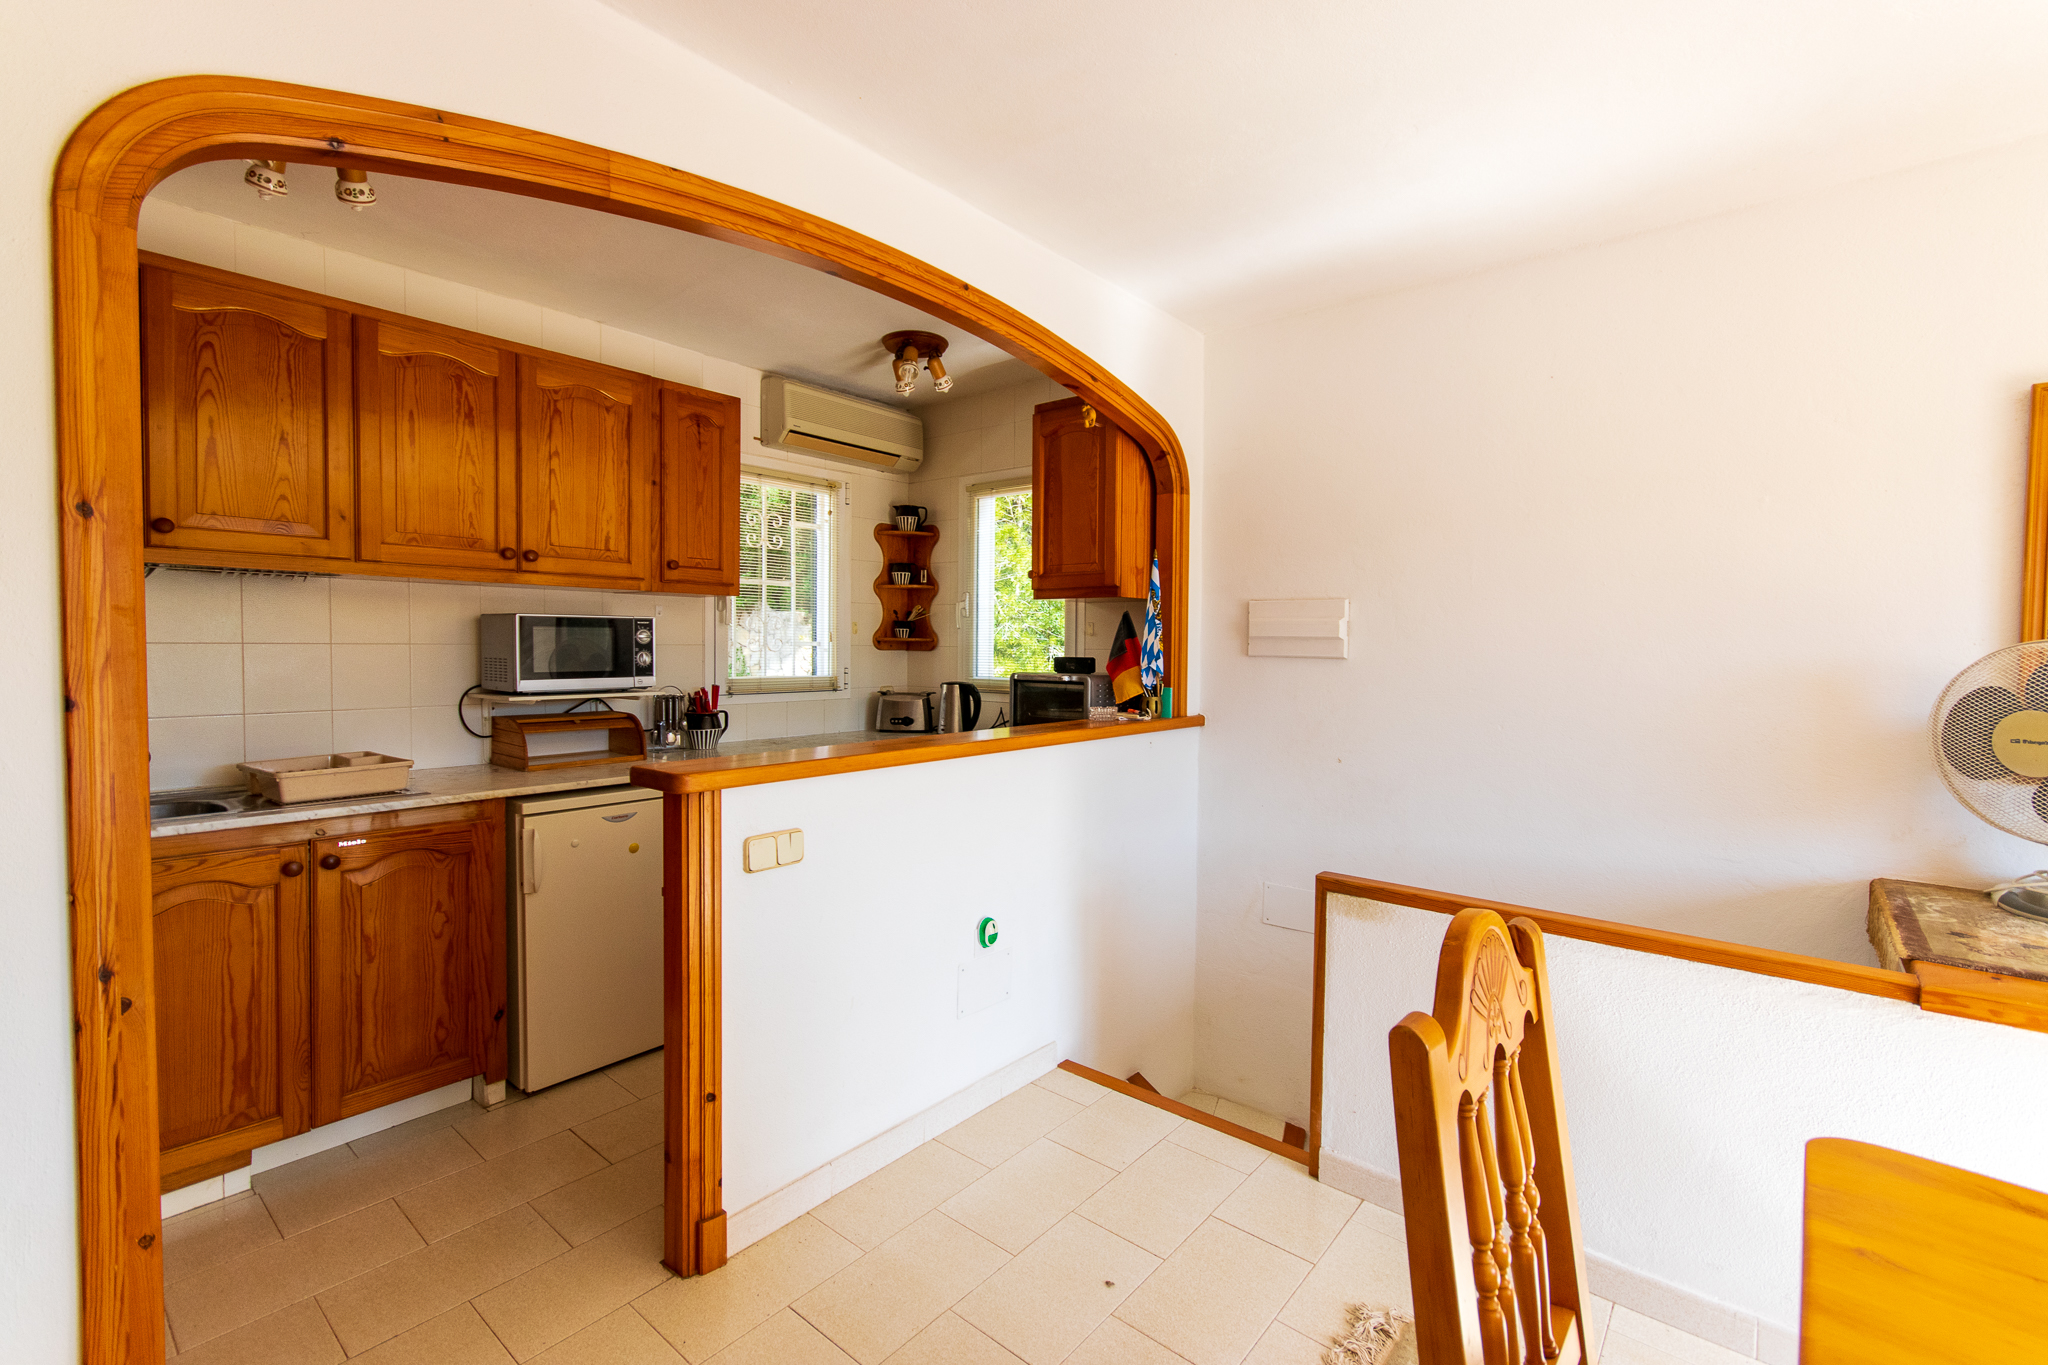 Duplex kitchen with good views in Cala Galdana